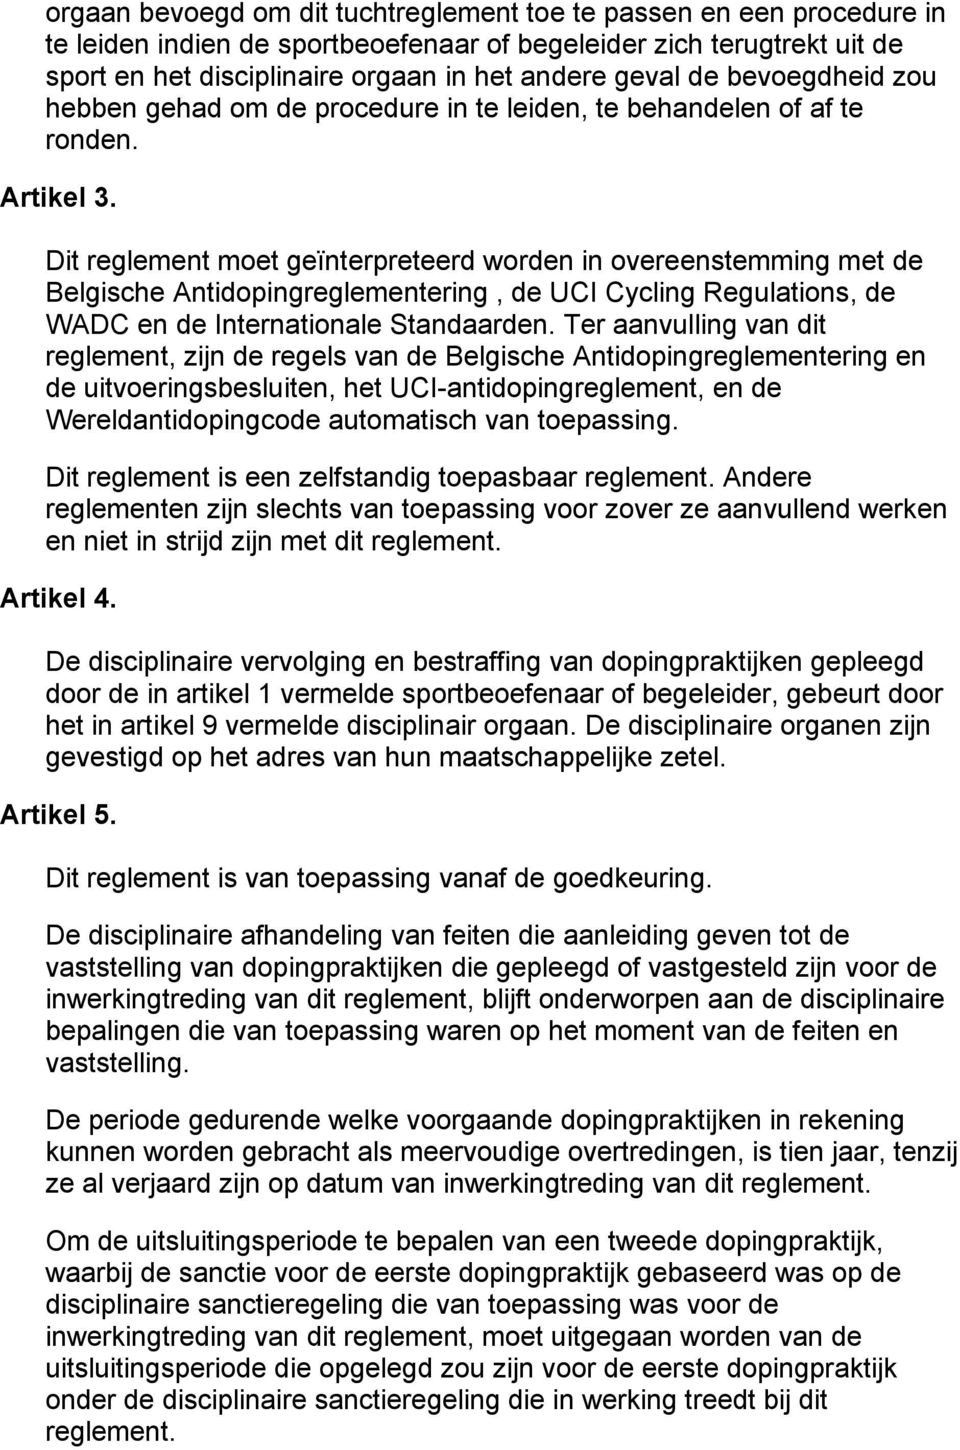 Dit reglement moet geïnterpreteerd worden in overeenstemming met de Belgische Antidopingreglementering, de UCI Cycling Regulations, de WADC en de Internationale Standaarden.